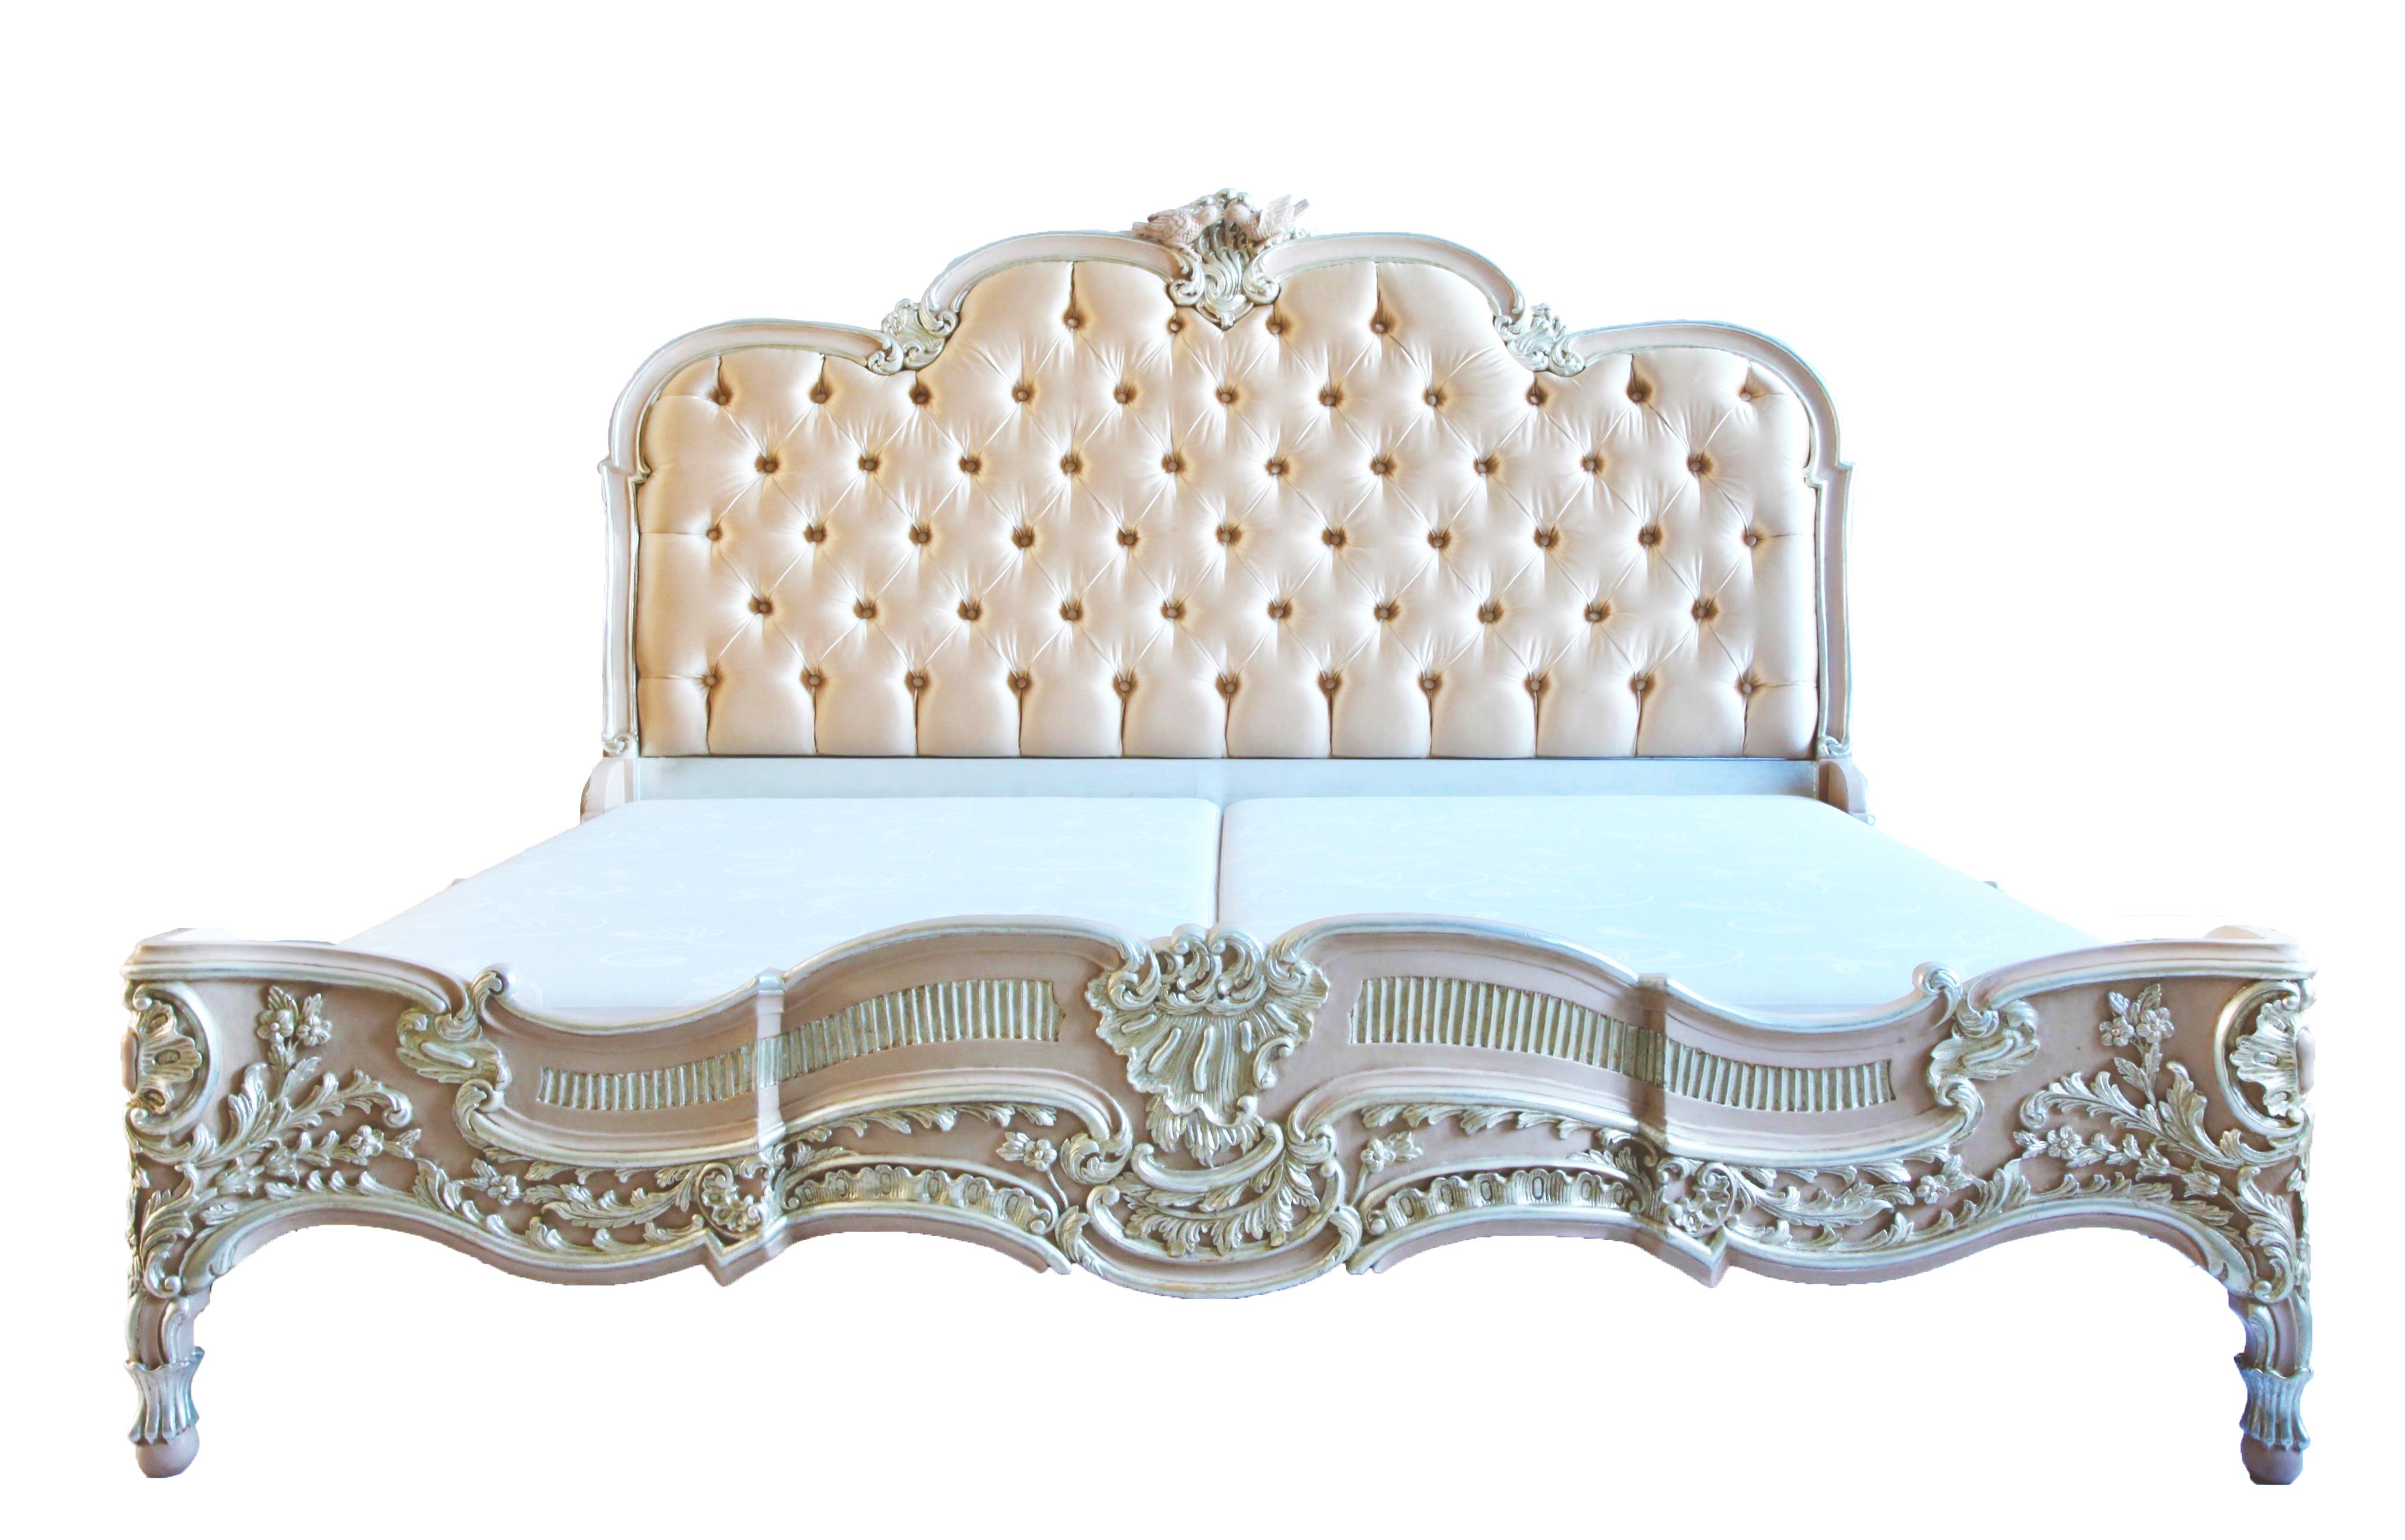 Das Lit De Marriage Bett, handgeschnitzt im Louis XV-Stil, ist einem unserer Originalstücke aus den 1800er Jahren nachempfunden, das nach französischer Tradition als Hochzeitsgeschenk angefertigt wurde. Symbolische Hinweise auf das Paar und ihre